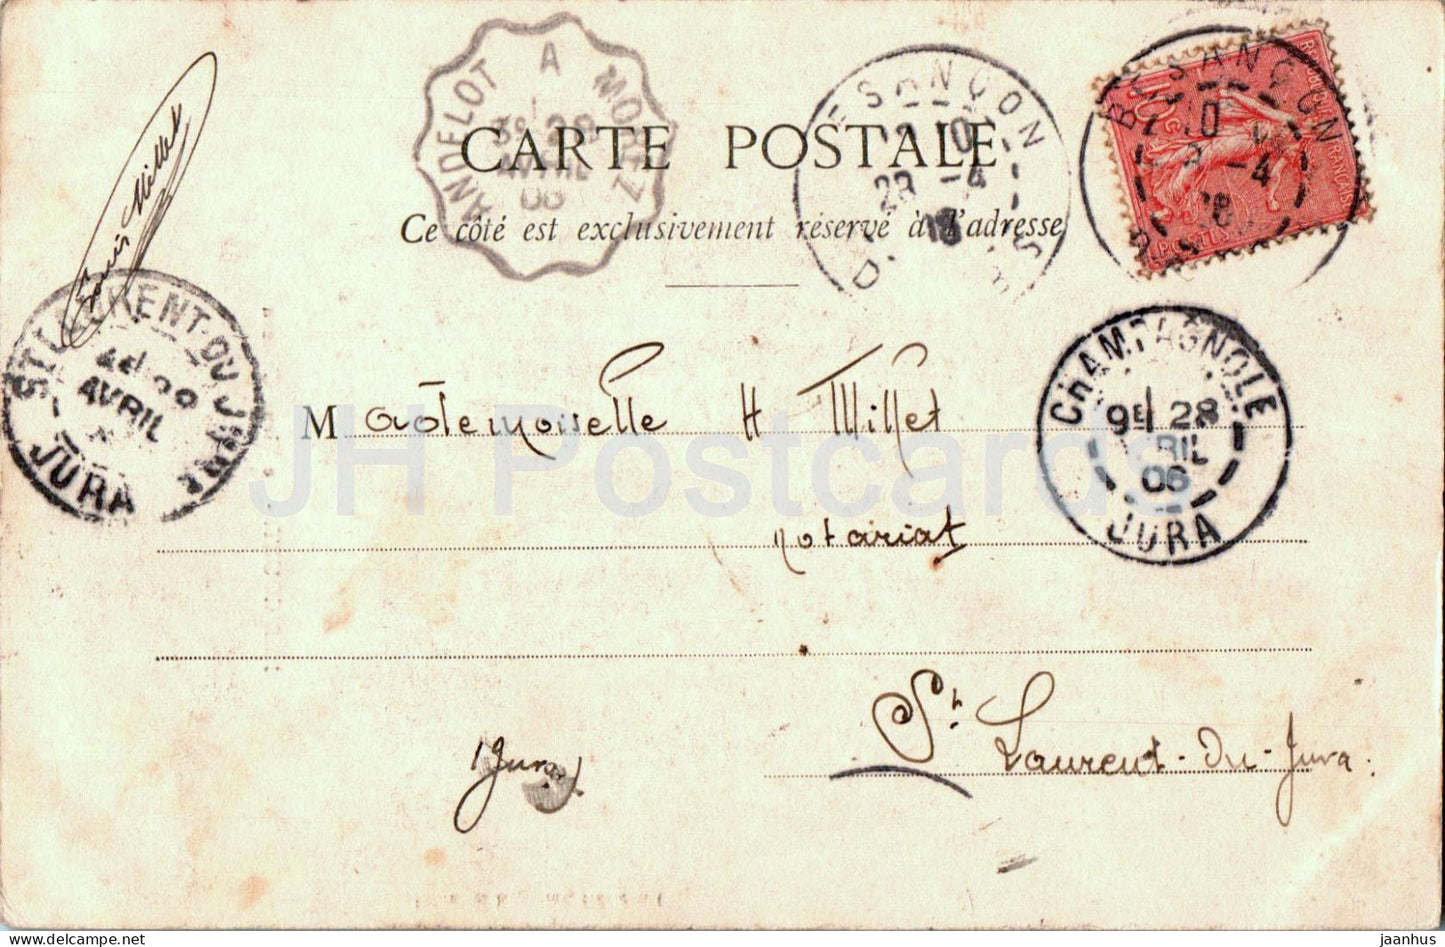 Hericourt - Le Vieux Chateau - Schloss - alte Postkarte - 1906 - Frankreich - gebraucht